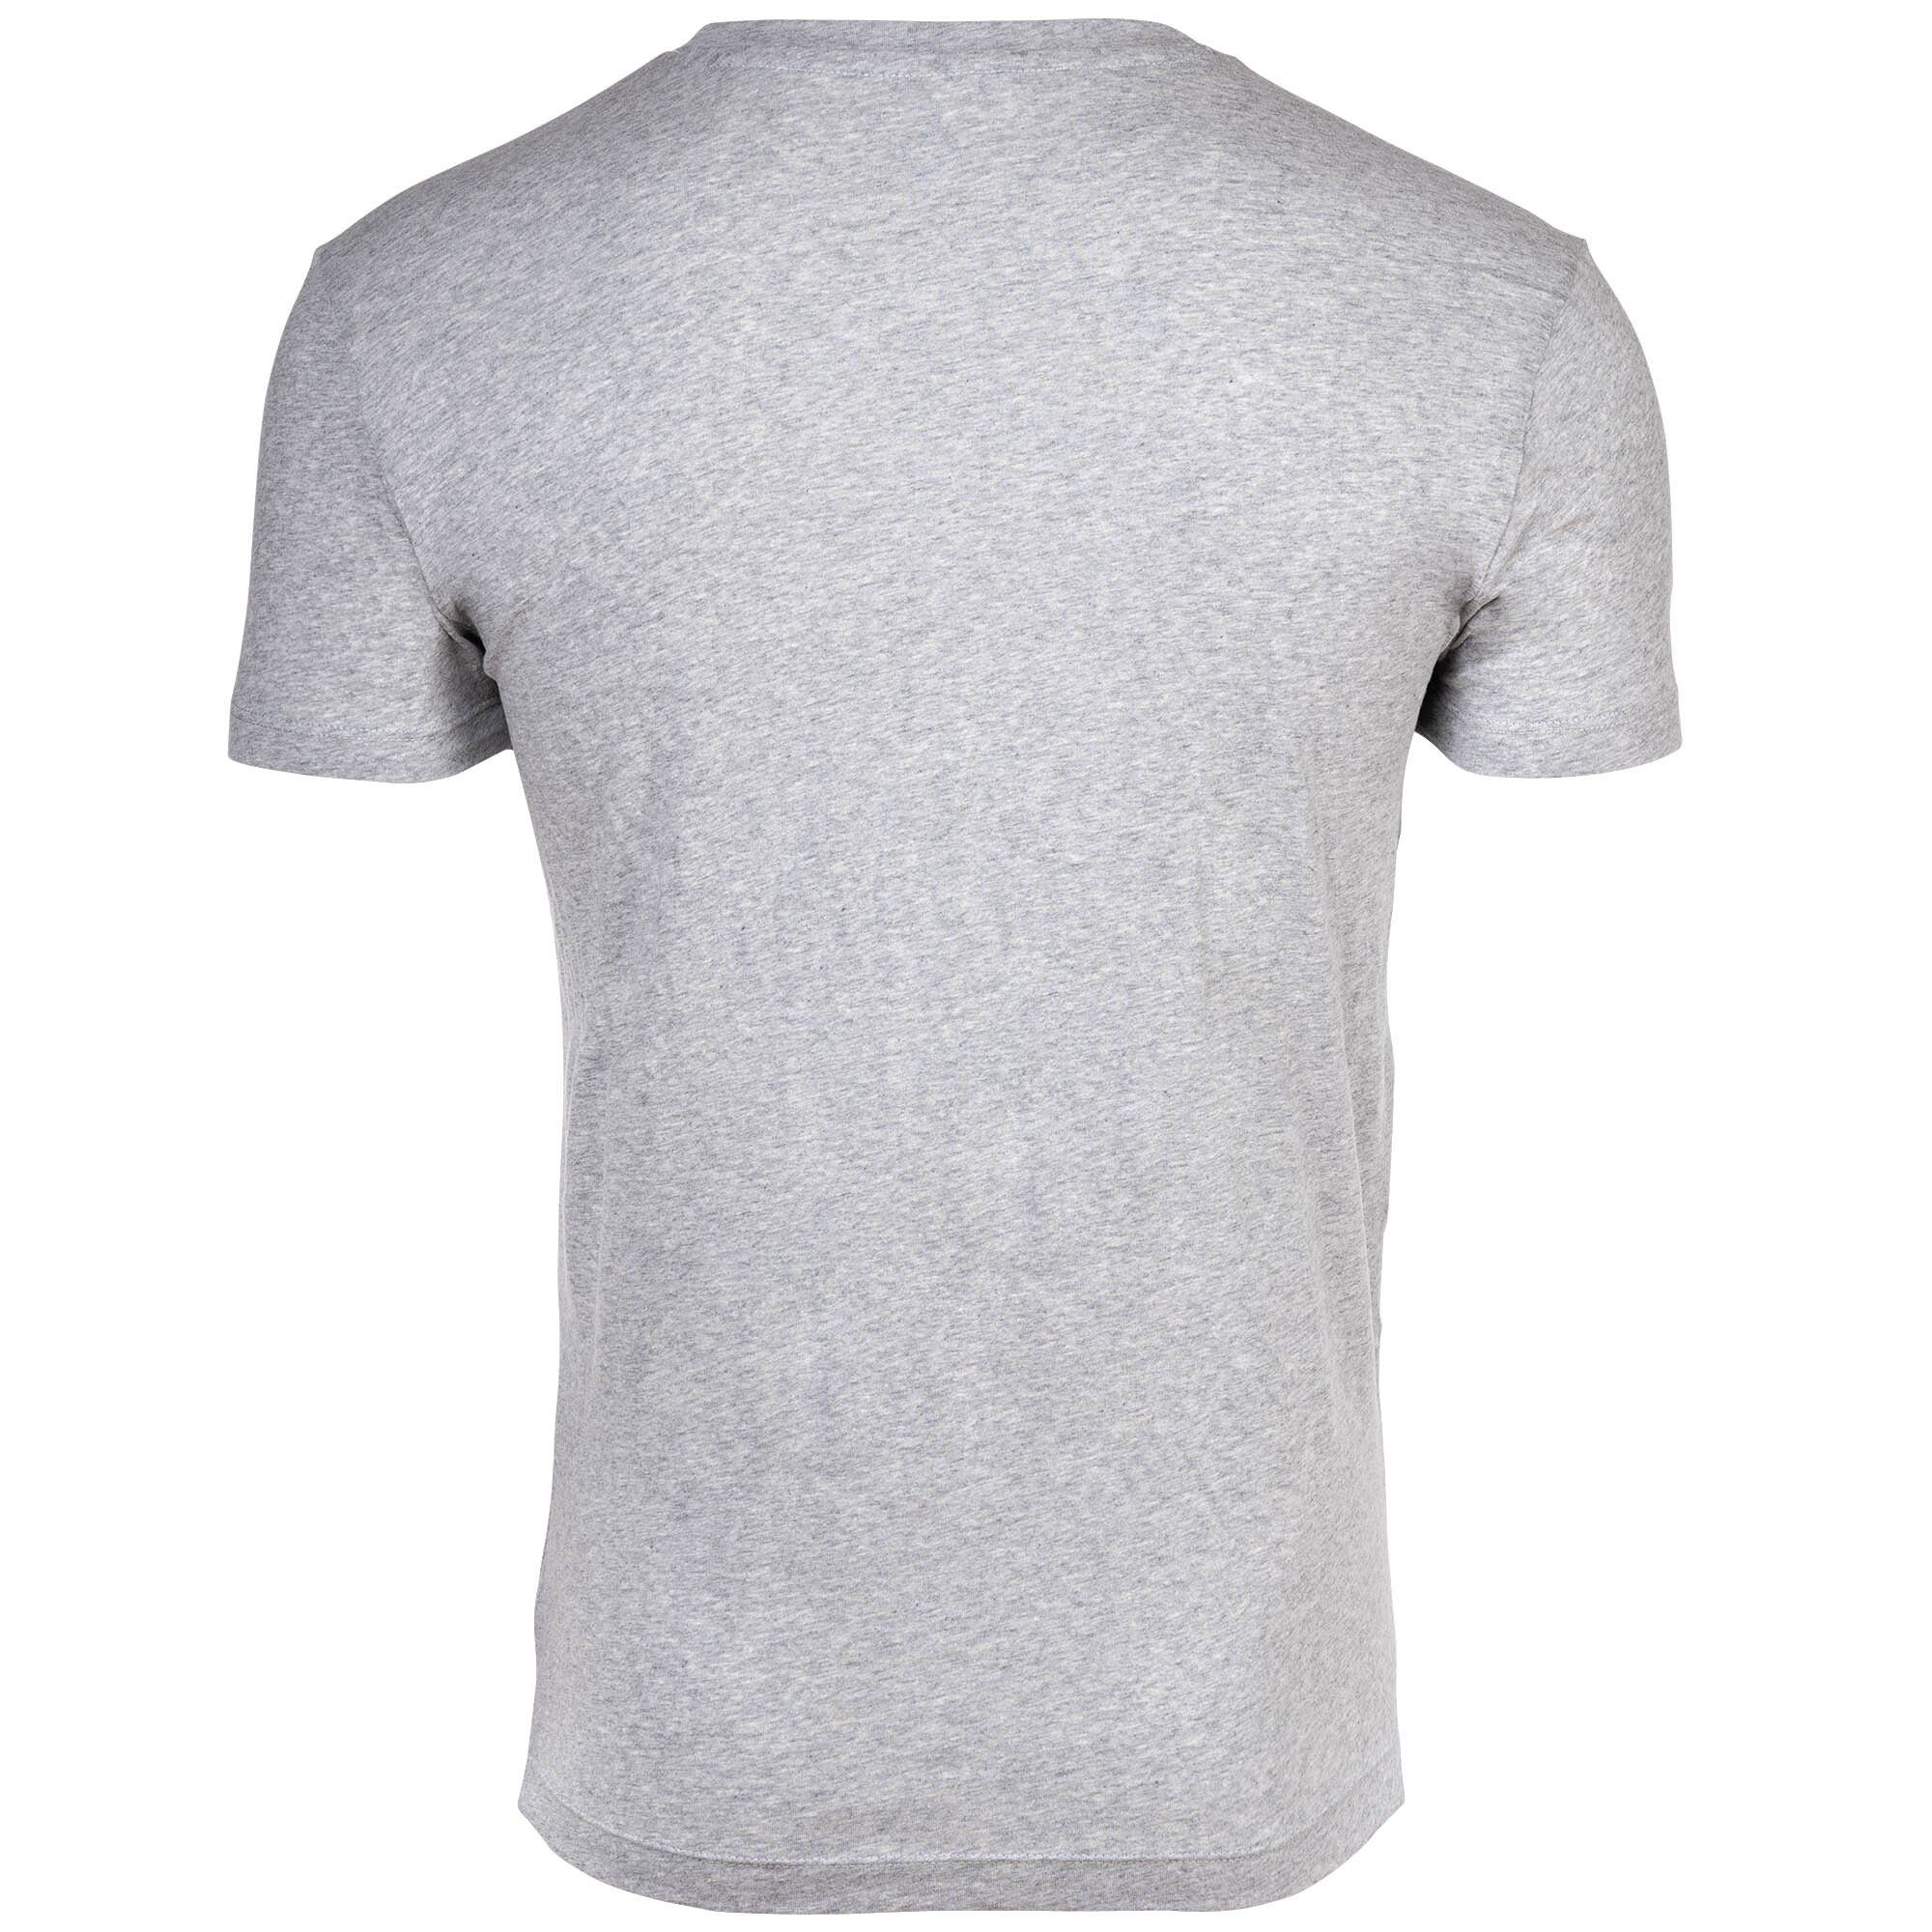 Rundhals, Neck Gant Pack Grau/Weiß - Herren 2er T-Shirt Crew T-Shirt,